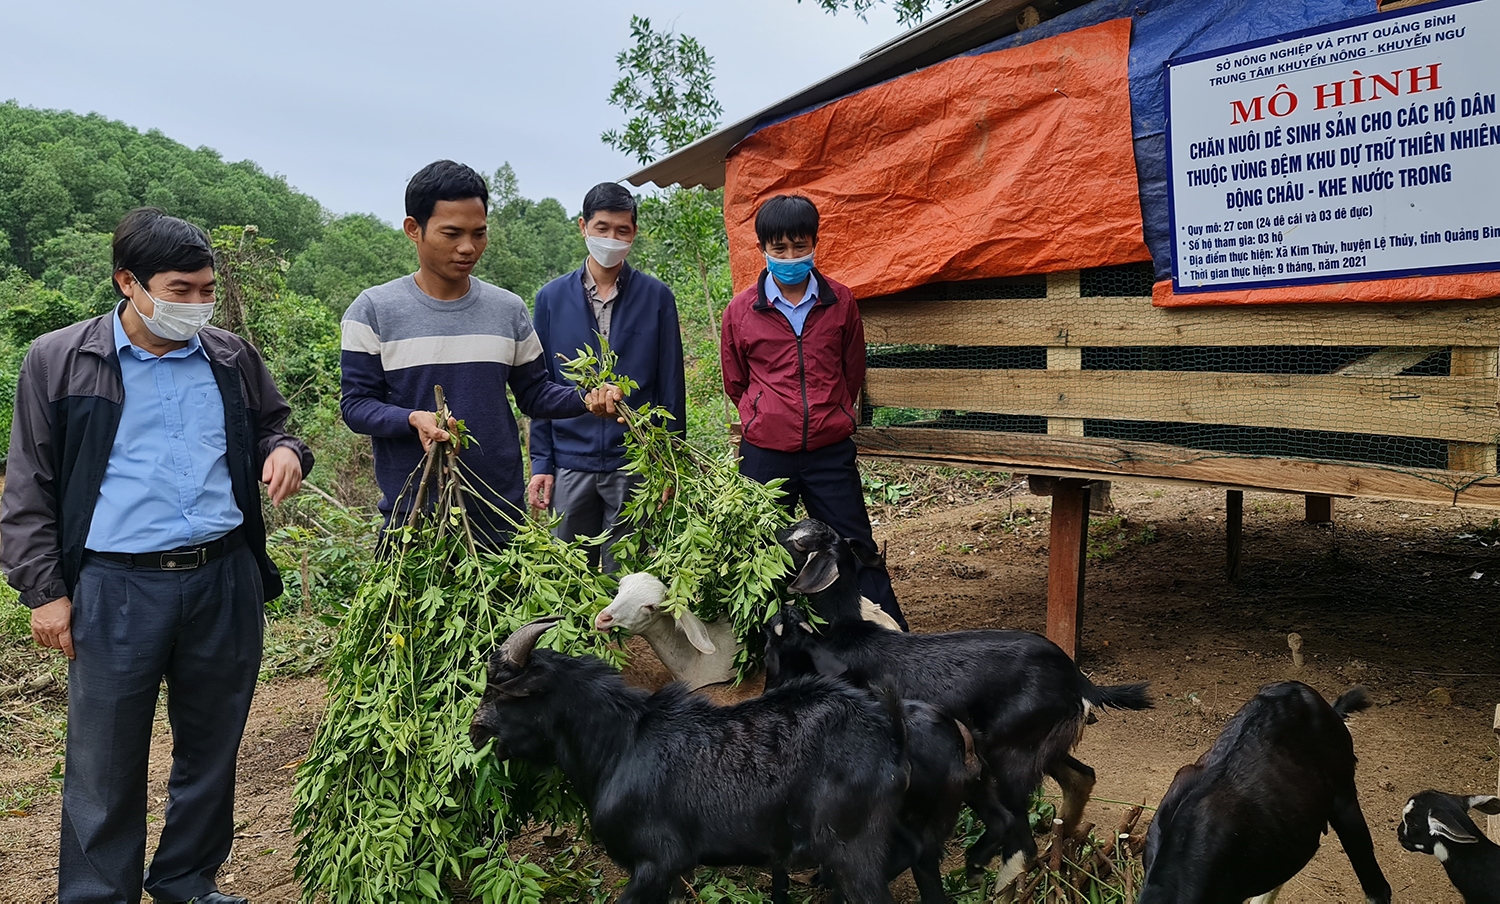 Trung tâm Khuyến nông- Khuyến Ngư tỉnh Quảng Bình hỗ trợ mô hình nuôi dê sinh sản người Bru Vân Kiều ở bản An Bai (xã Kim Thủy, huyện Lệ Thúy)